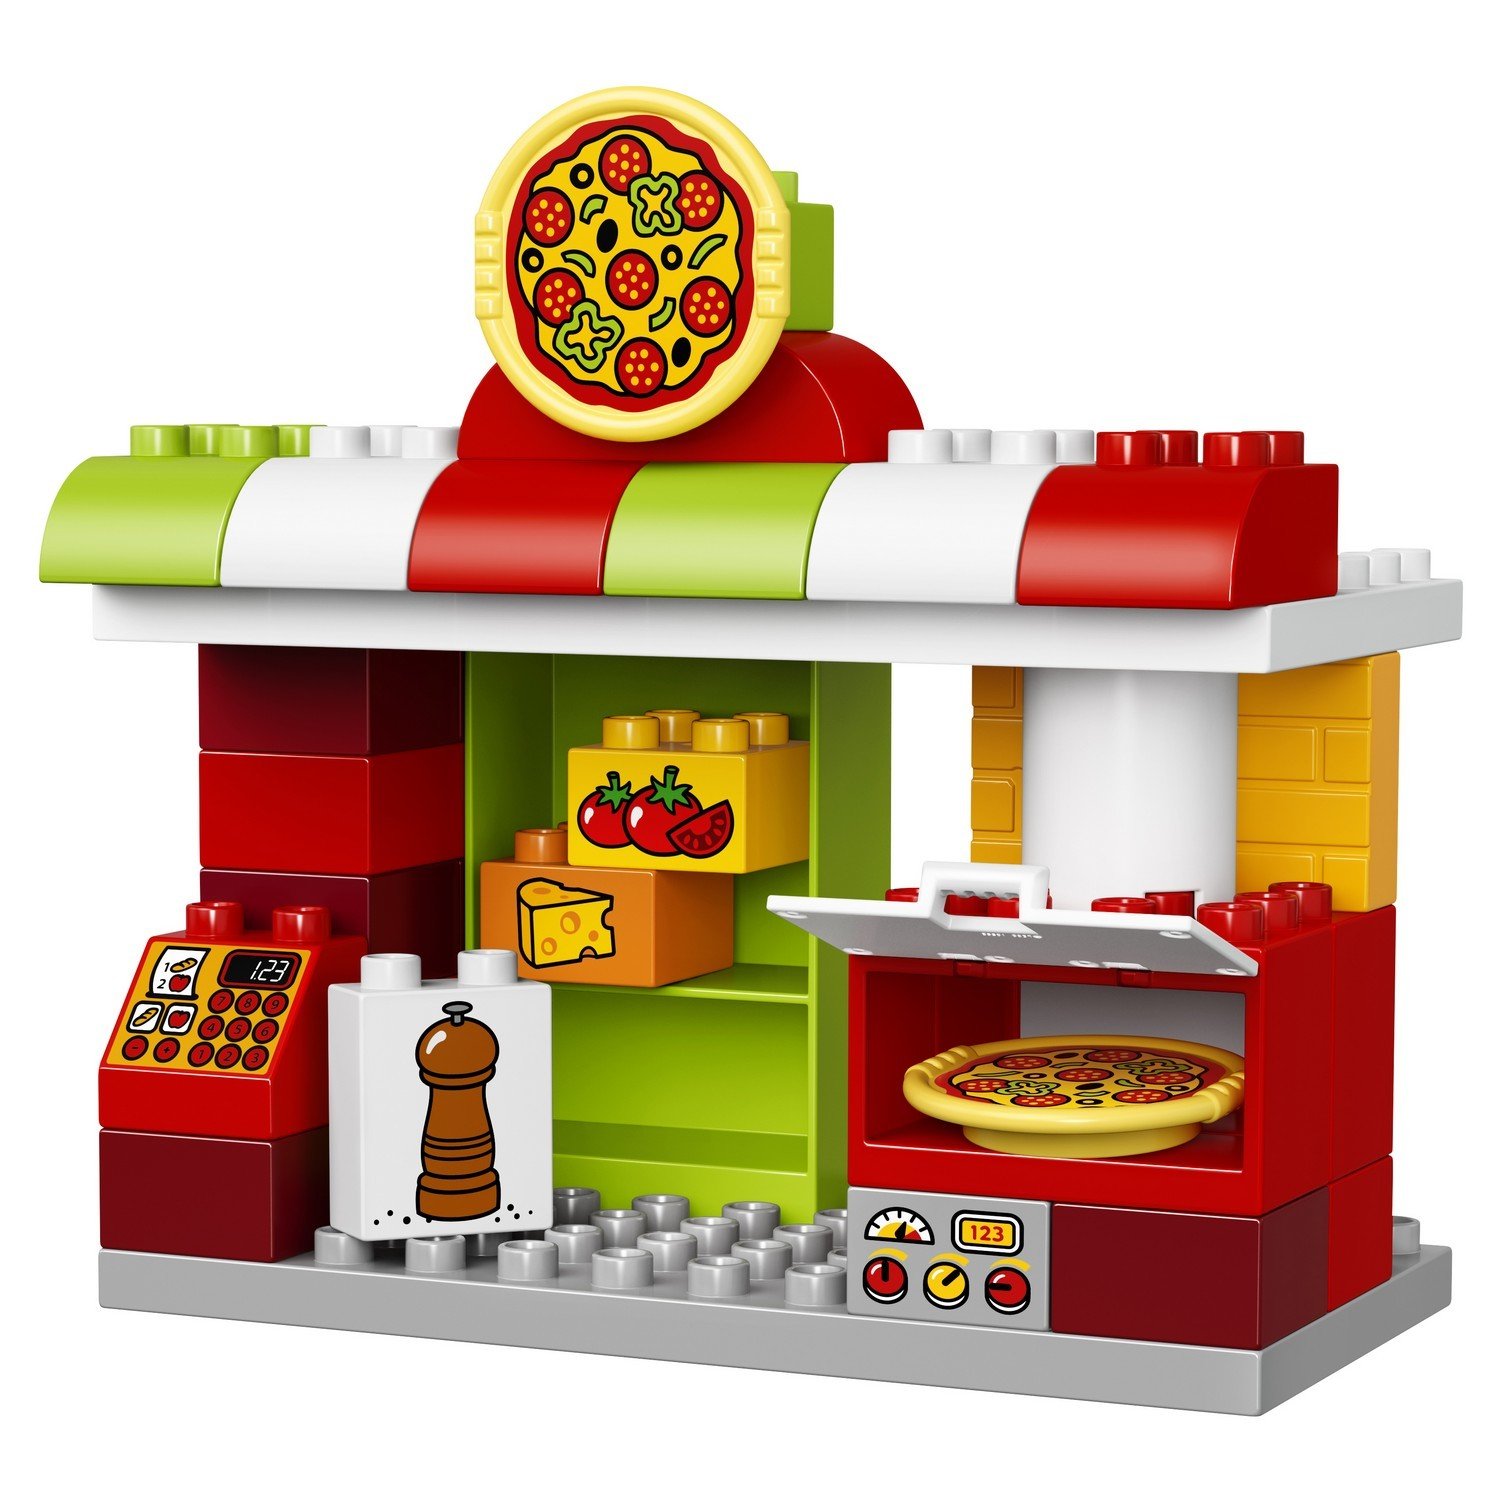 Конструктор LEGO Duplo «Пиццерия» 10834